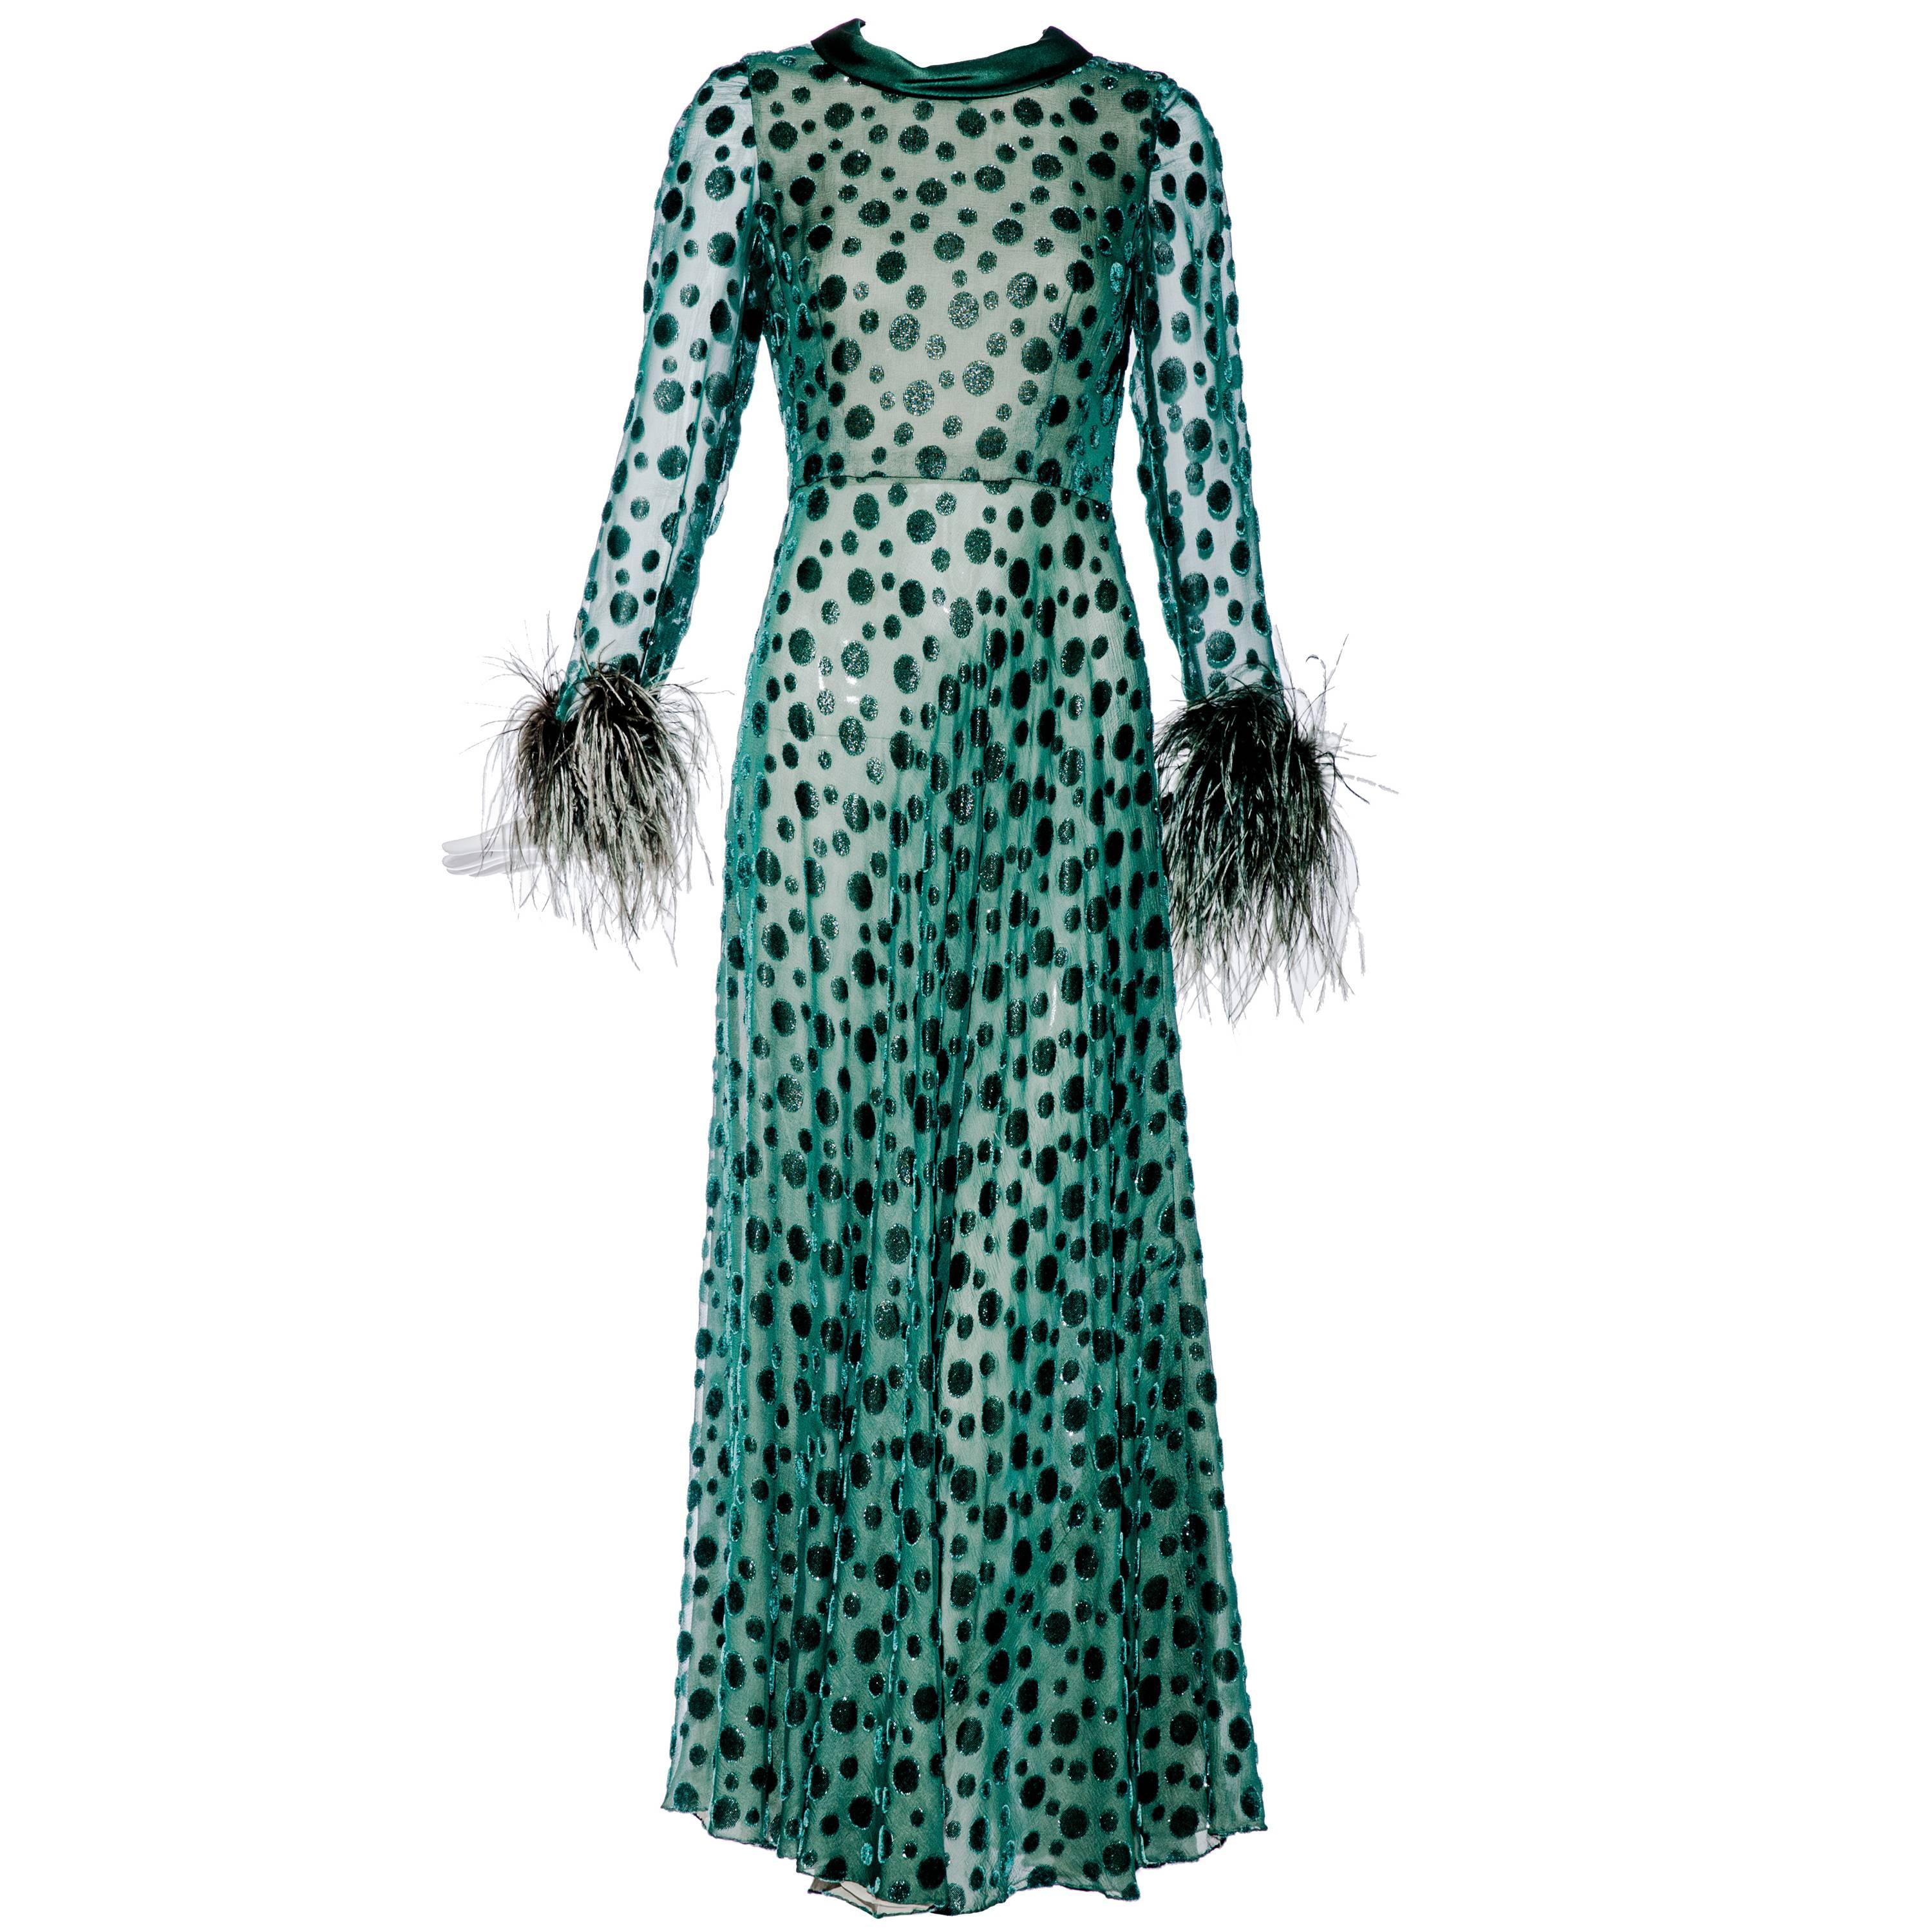 1970s CARDINALI green silk dress with velvet dots